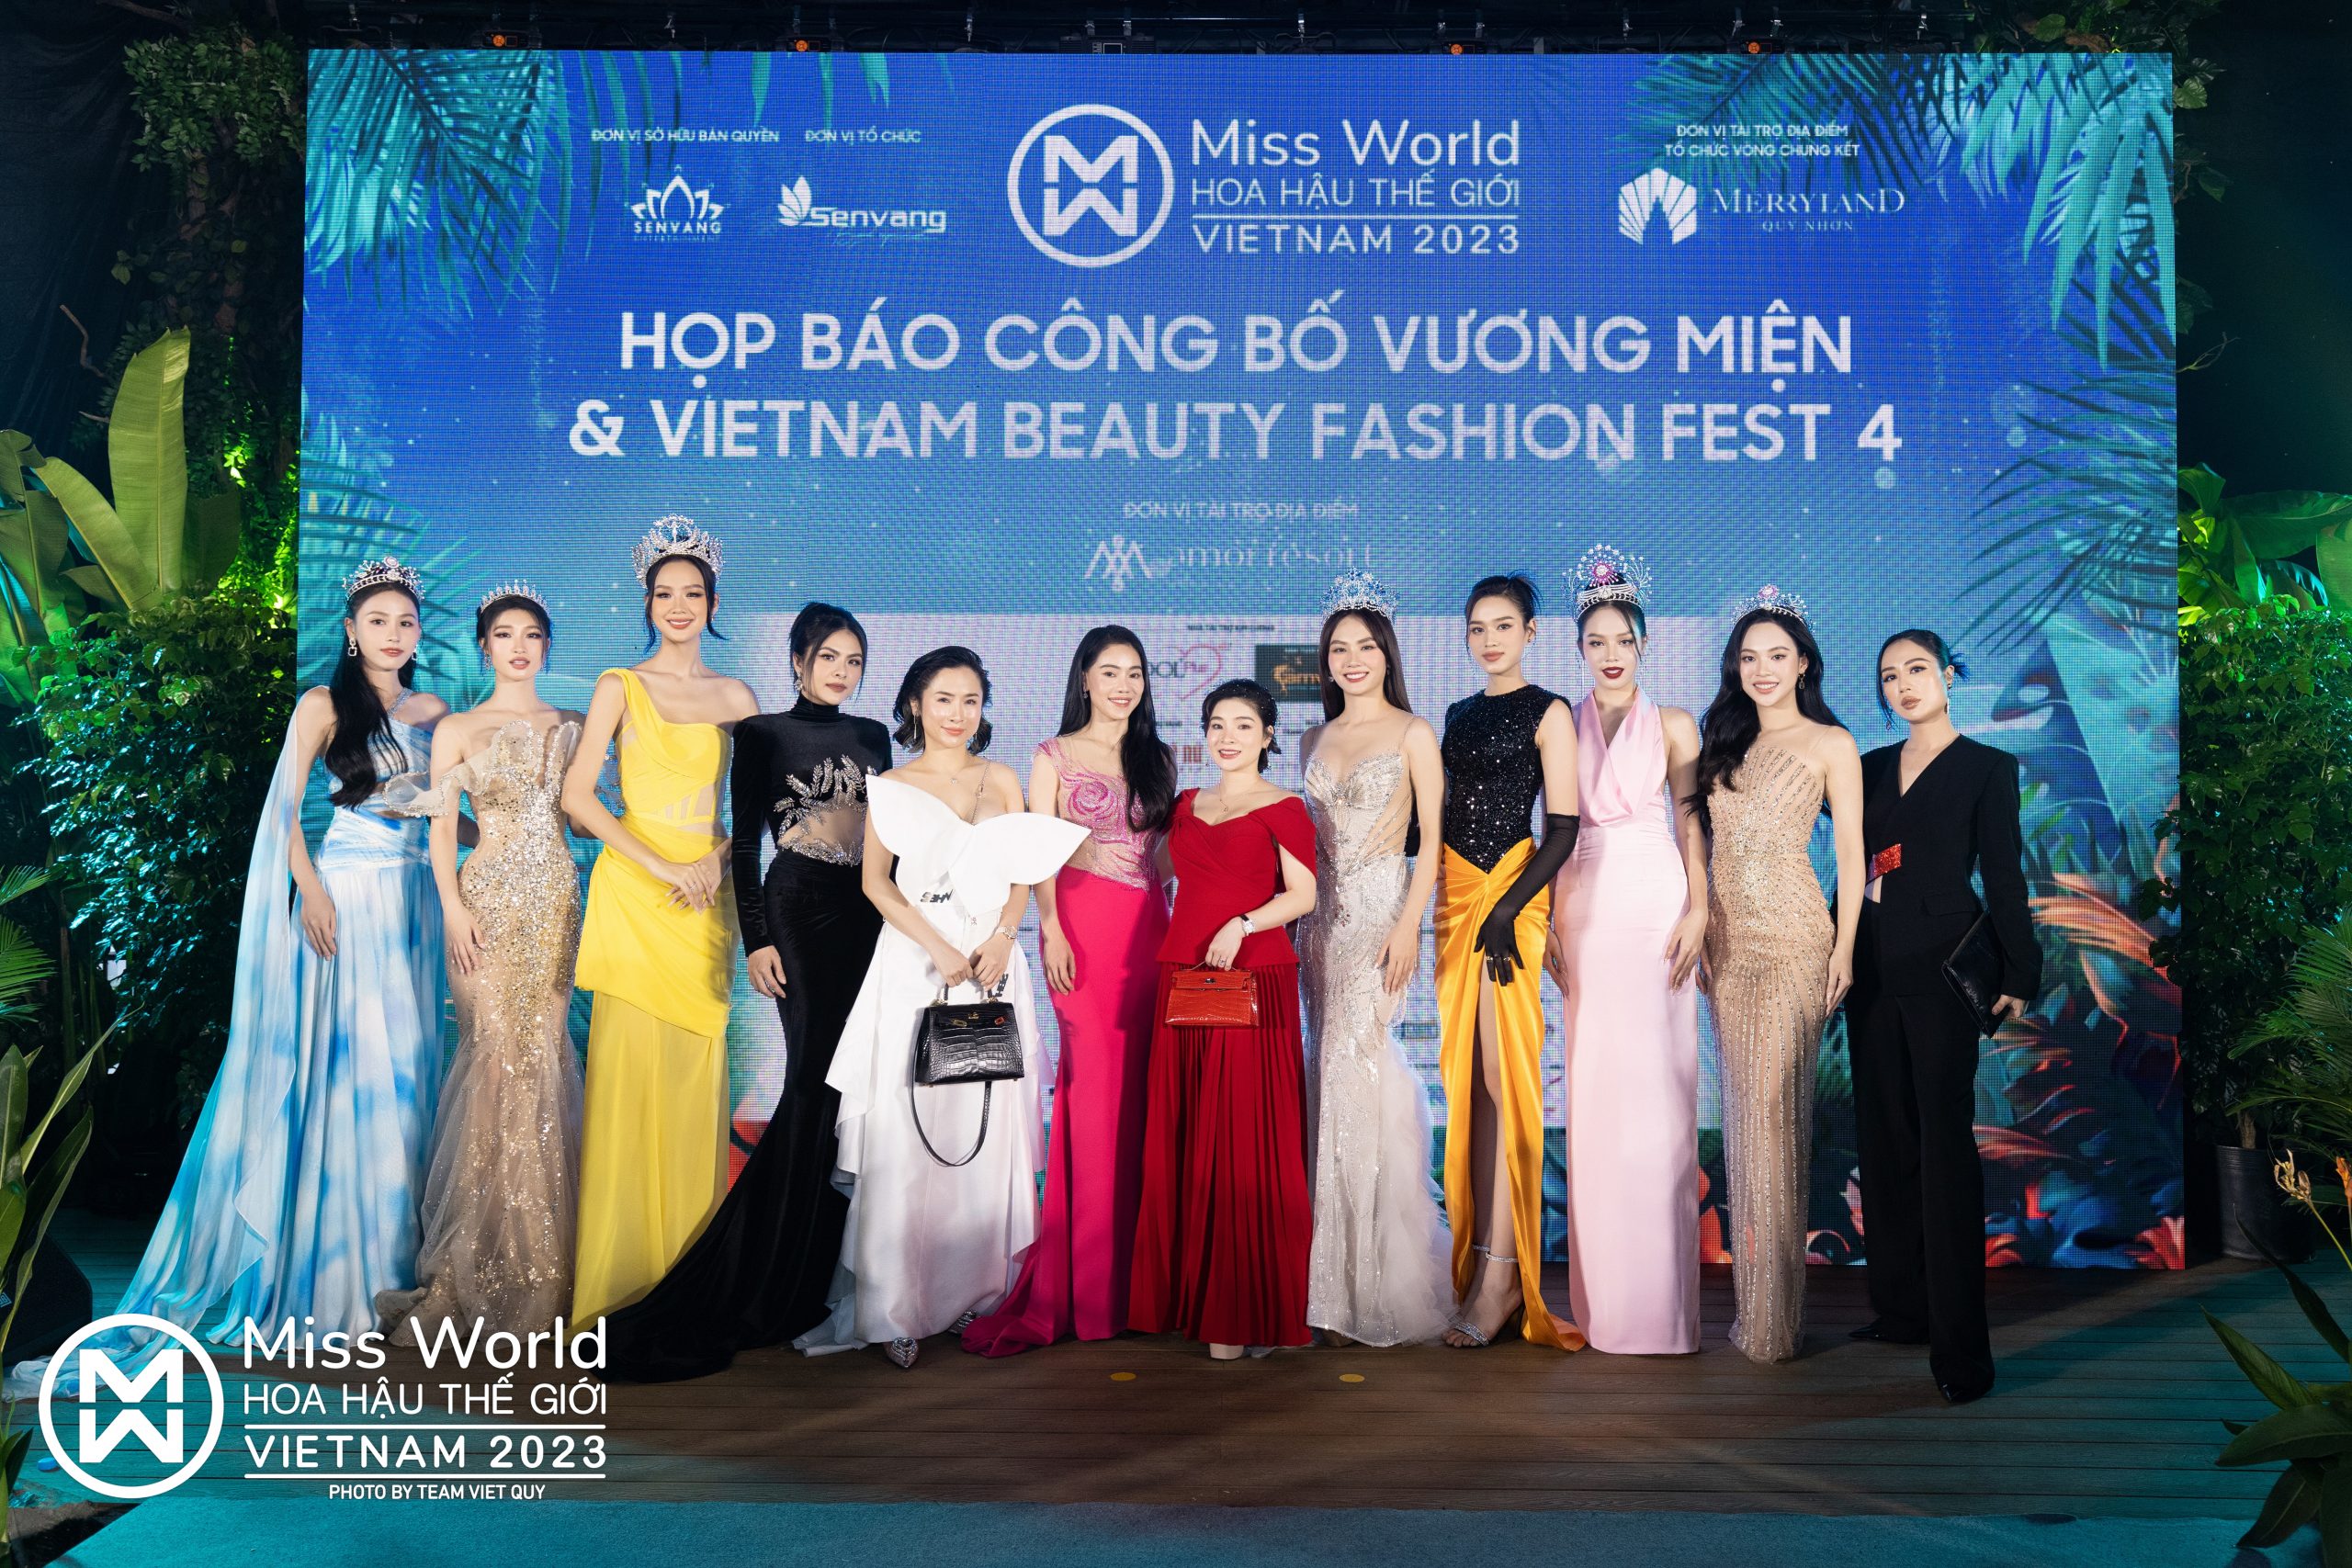 Founder Peauhonnête Việt Nam chia sẻ kỳ vọng nâng tầm sắc đẹp Việt tại Họp báo Công bố Vương miện đăng quang